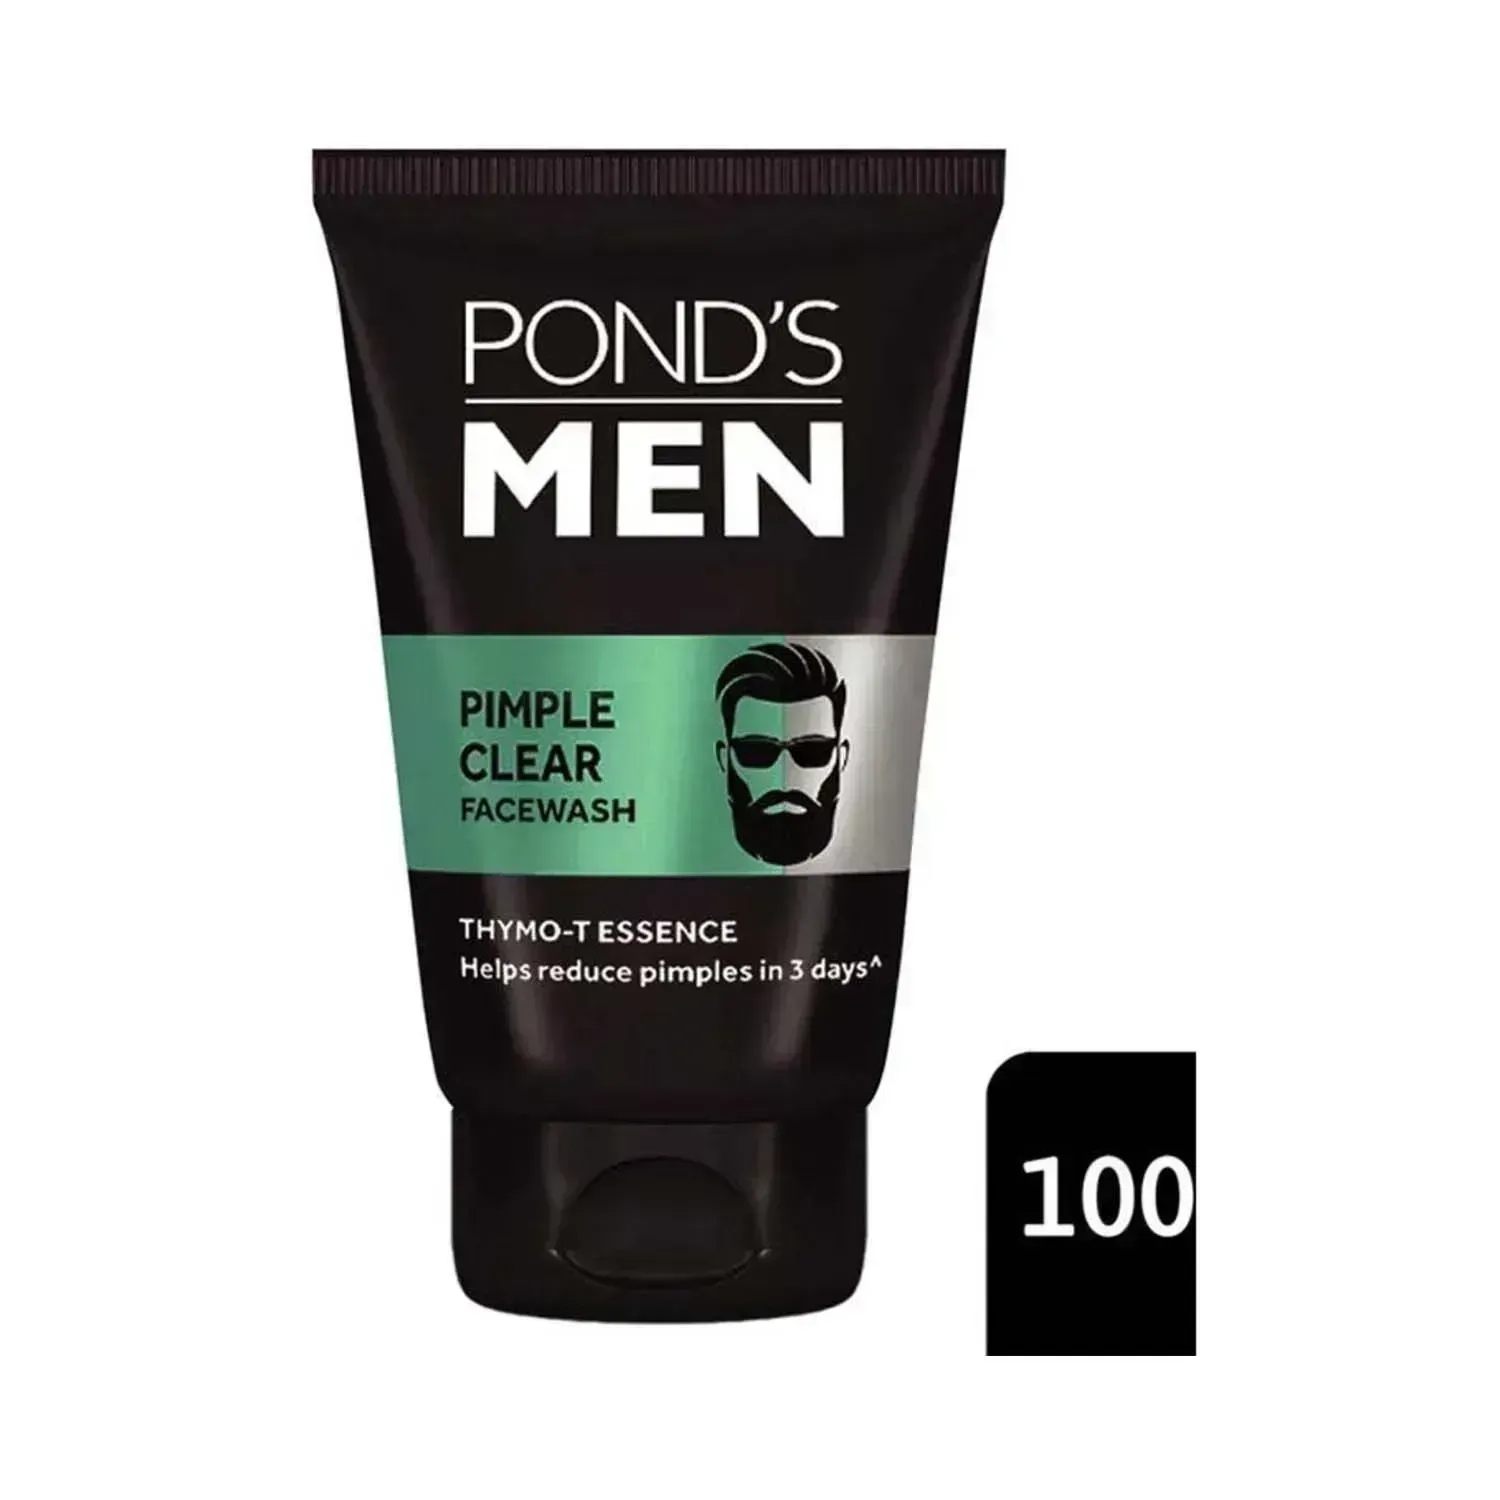 Pond's | Pond's Men Pimple Clear Facewash - (100g)